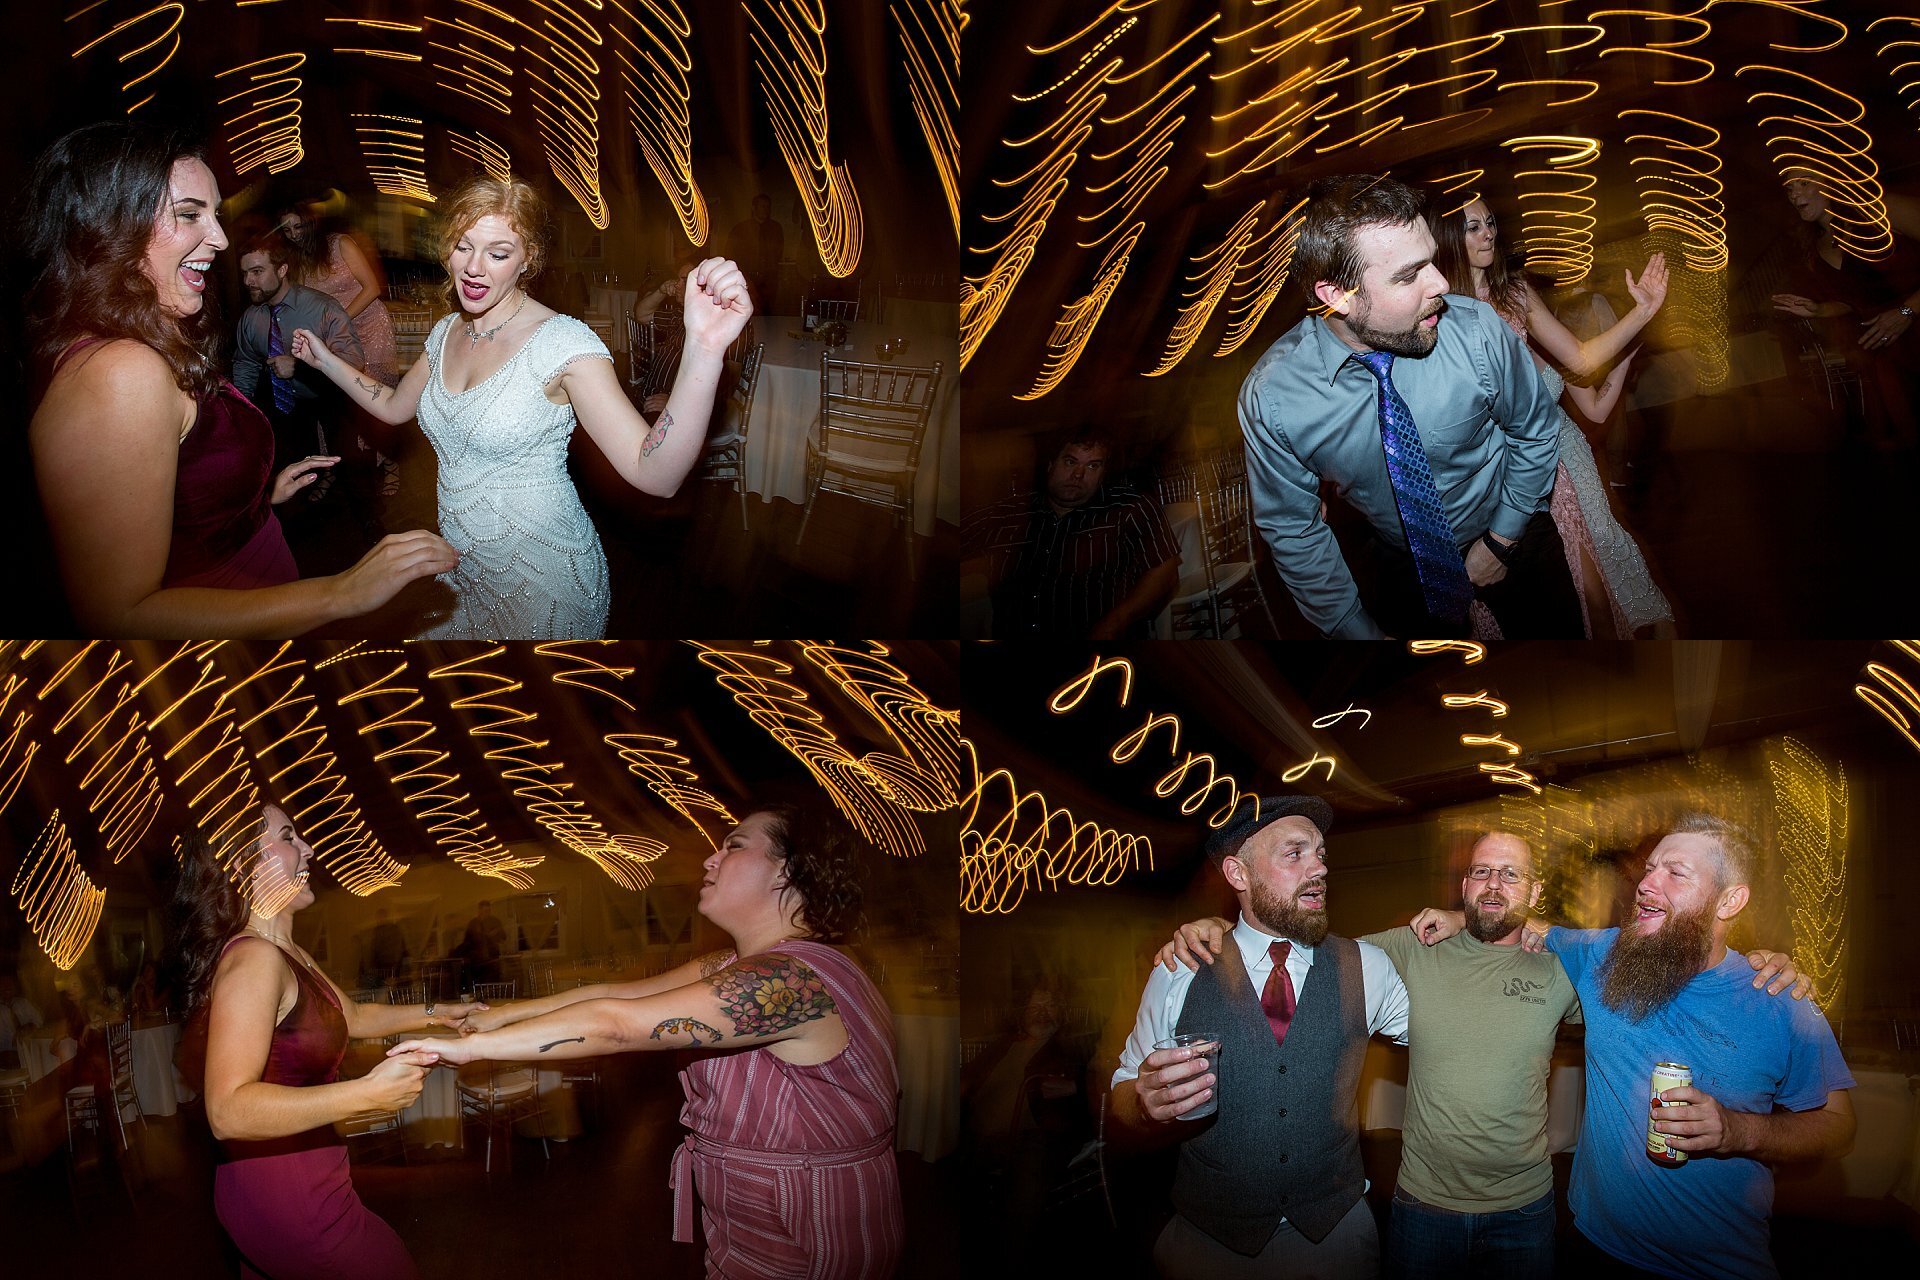 Fun Wedding Reception Dancing Photos